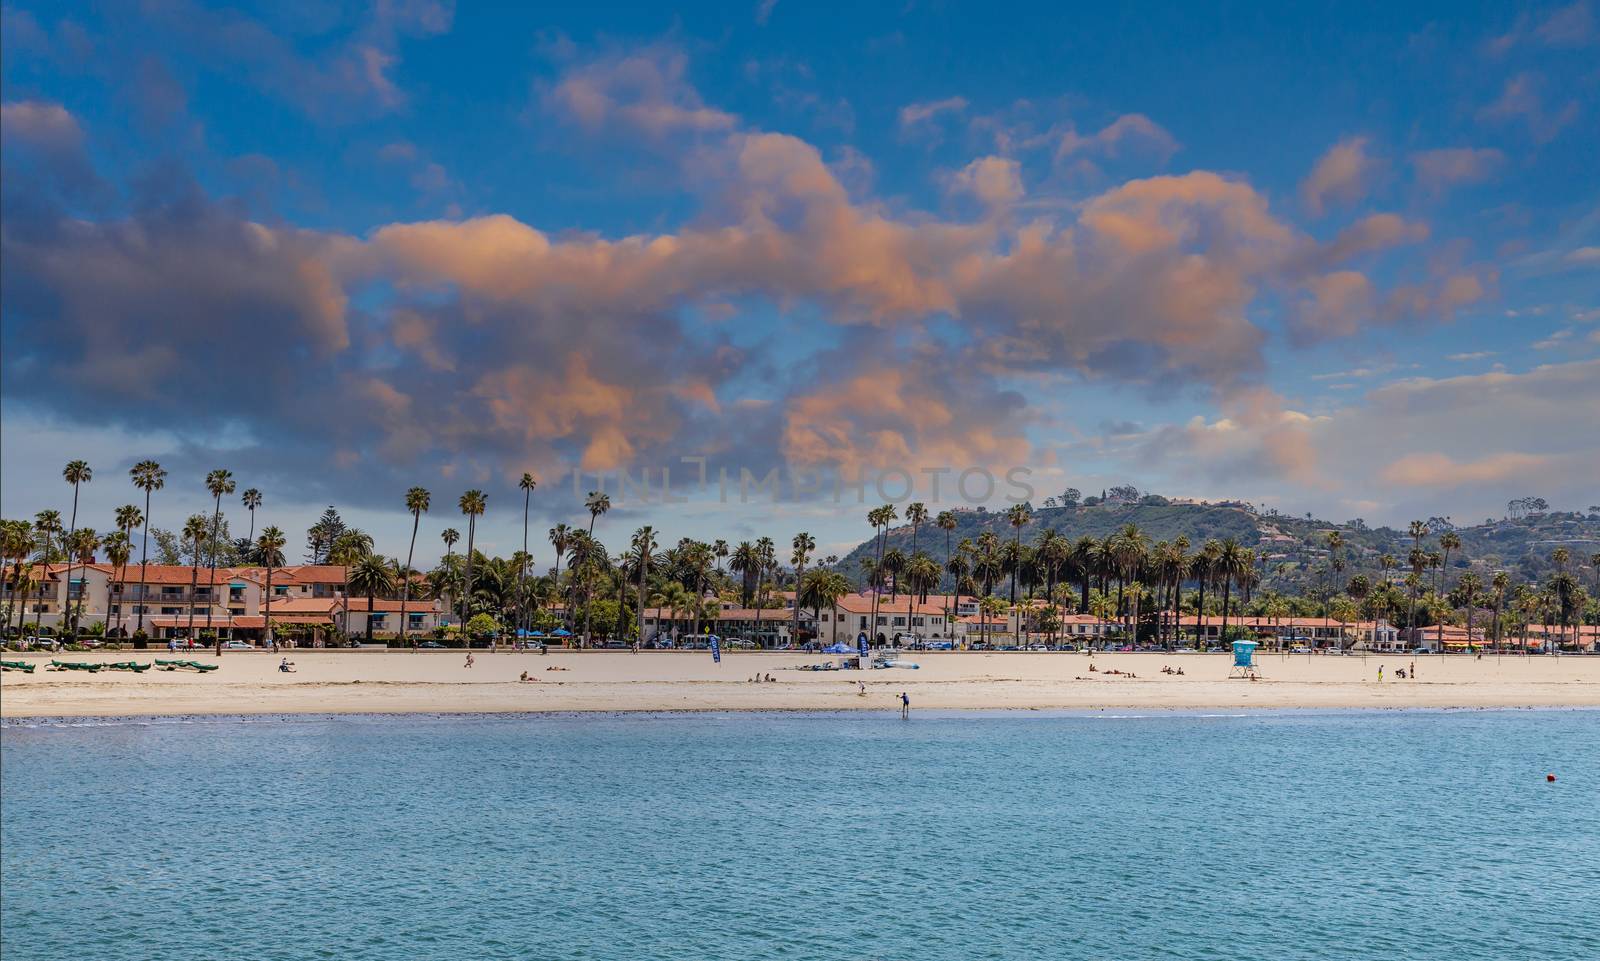 Palm Trees and Resort on Santa Barbara Beach at Dawn by dbvirago